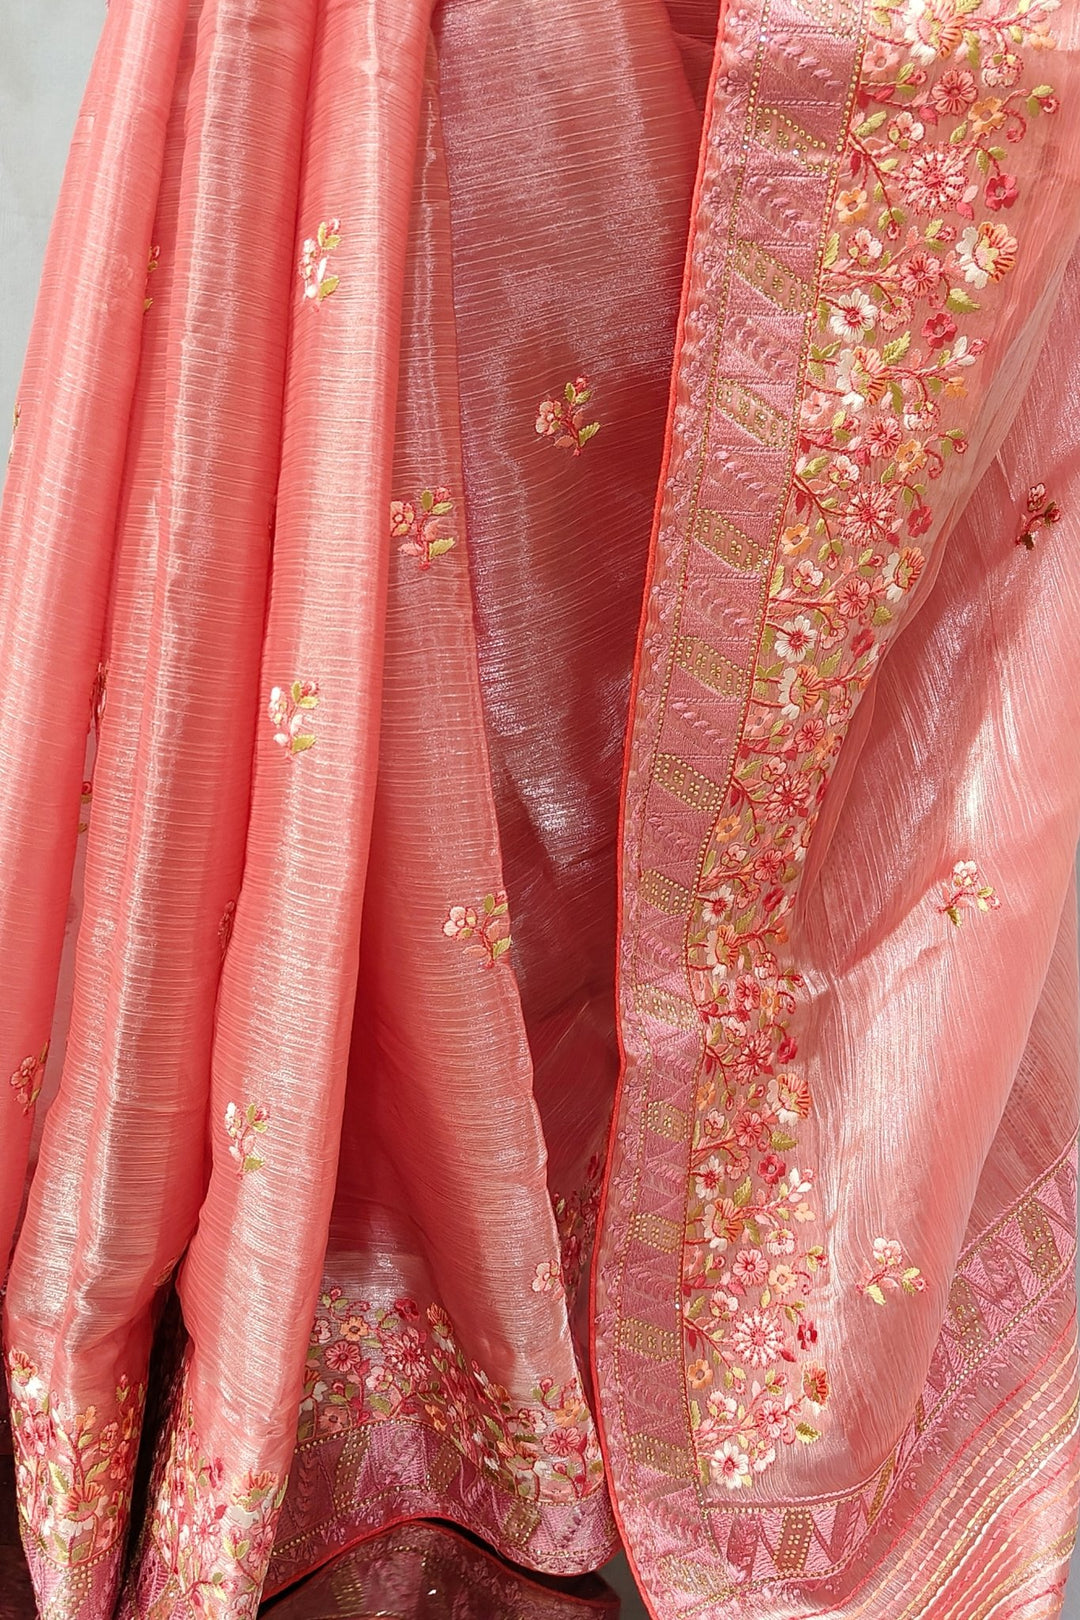 pastel peach saree - peach colour saree - peach saree - peach pink saree - peach saree look